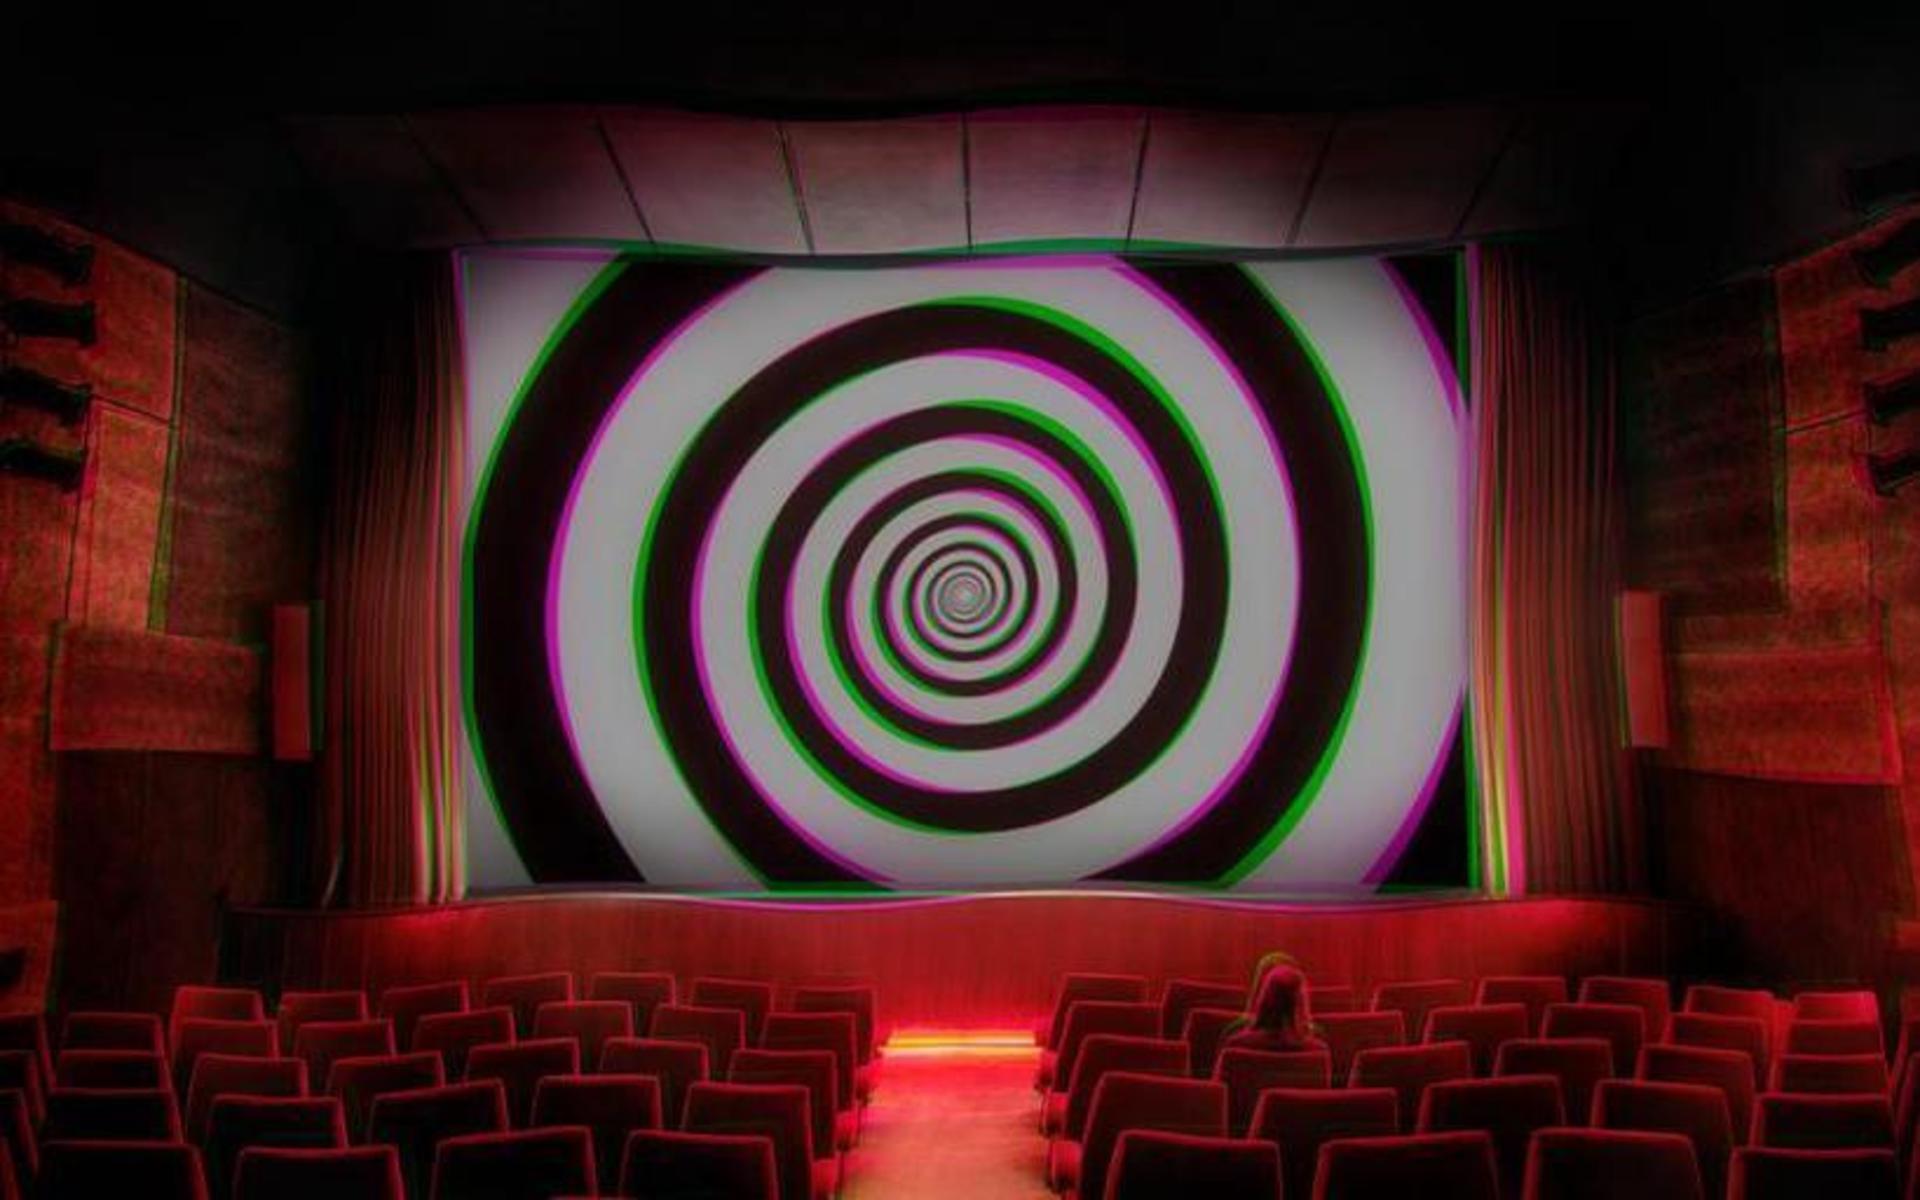 Föreställningarna ”Hypnotic cinema” har nu fått grönt ljus från Socialstyrelsen och kan genomföras som planerat.